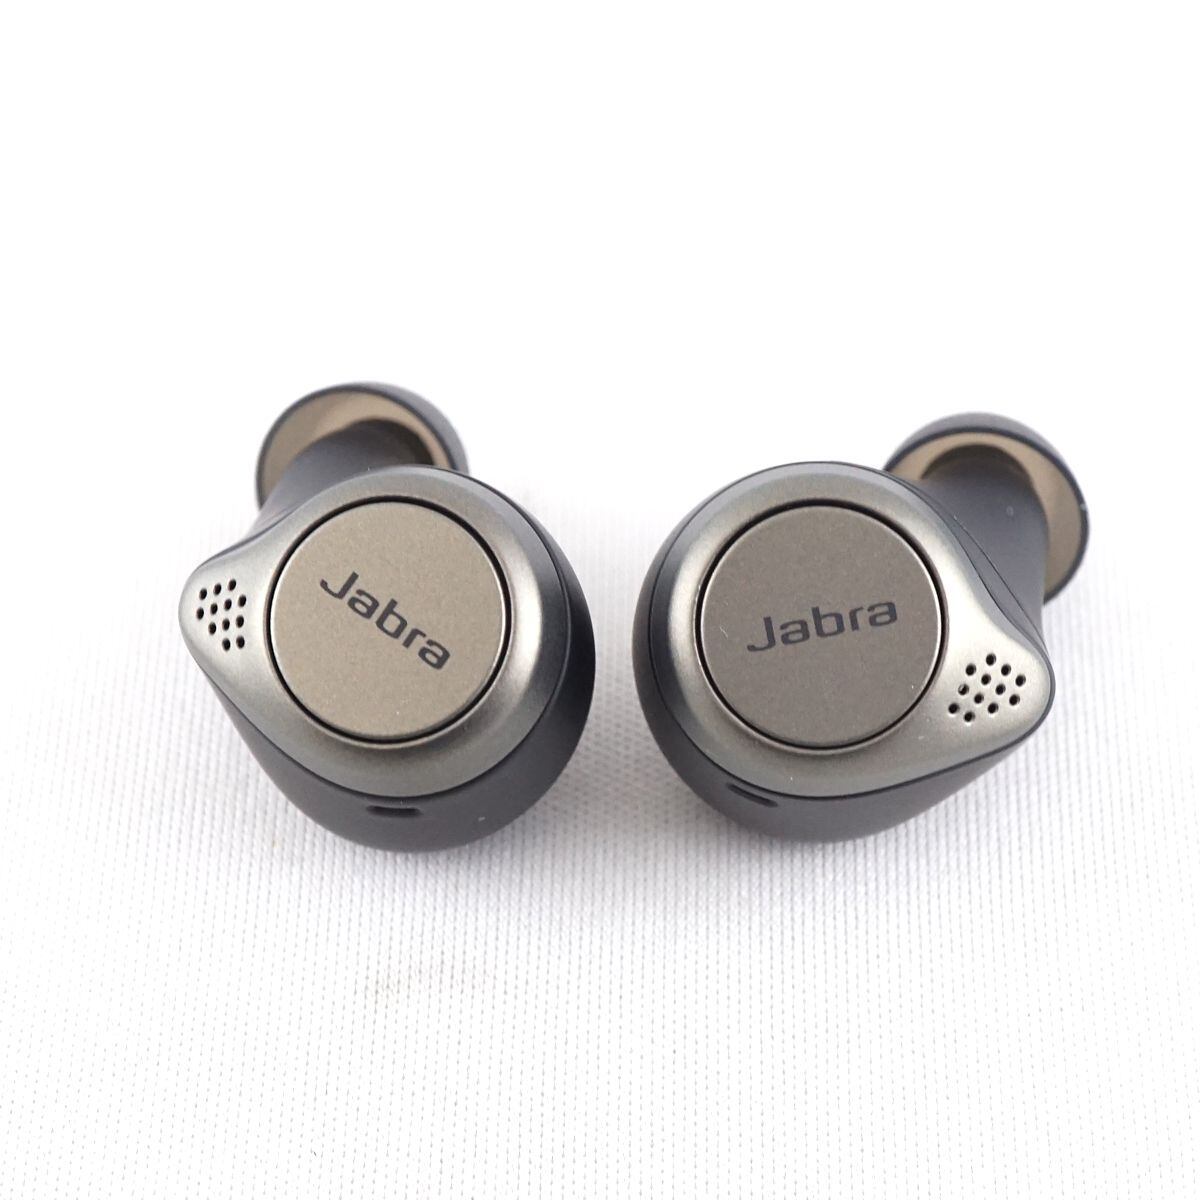 Jabra Elite75t ワイヤレスイヤホン USED美品 ノイズキャンセリング ANC HearThrough機能 防水 IP55 マイク  完動品 S V9284